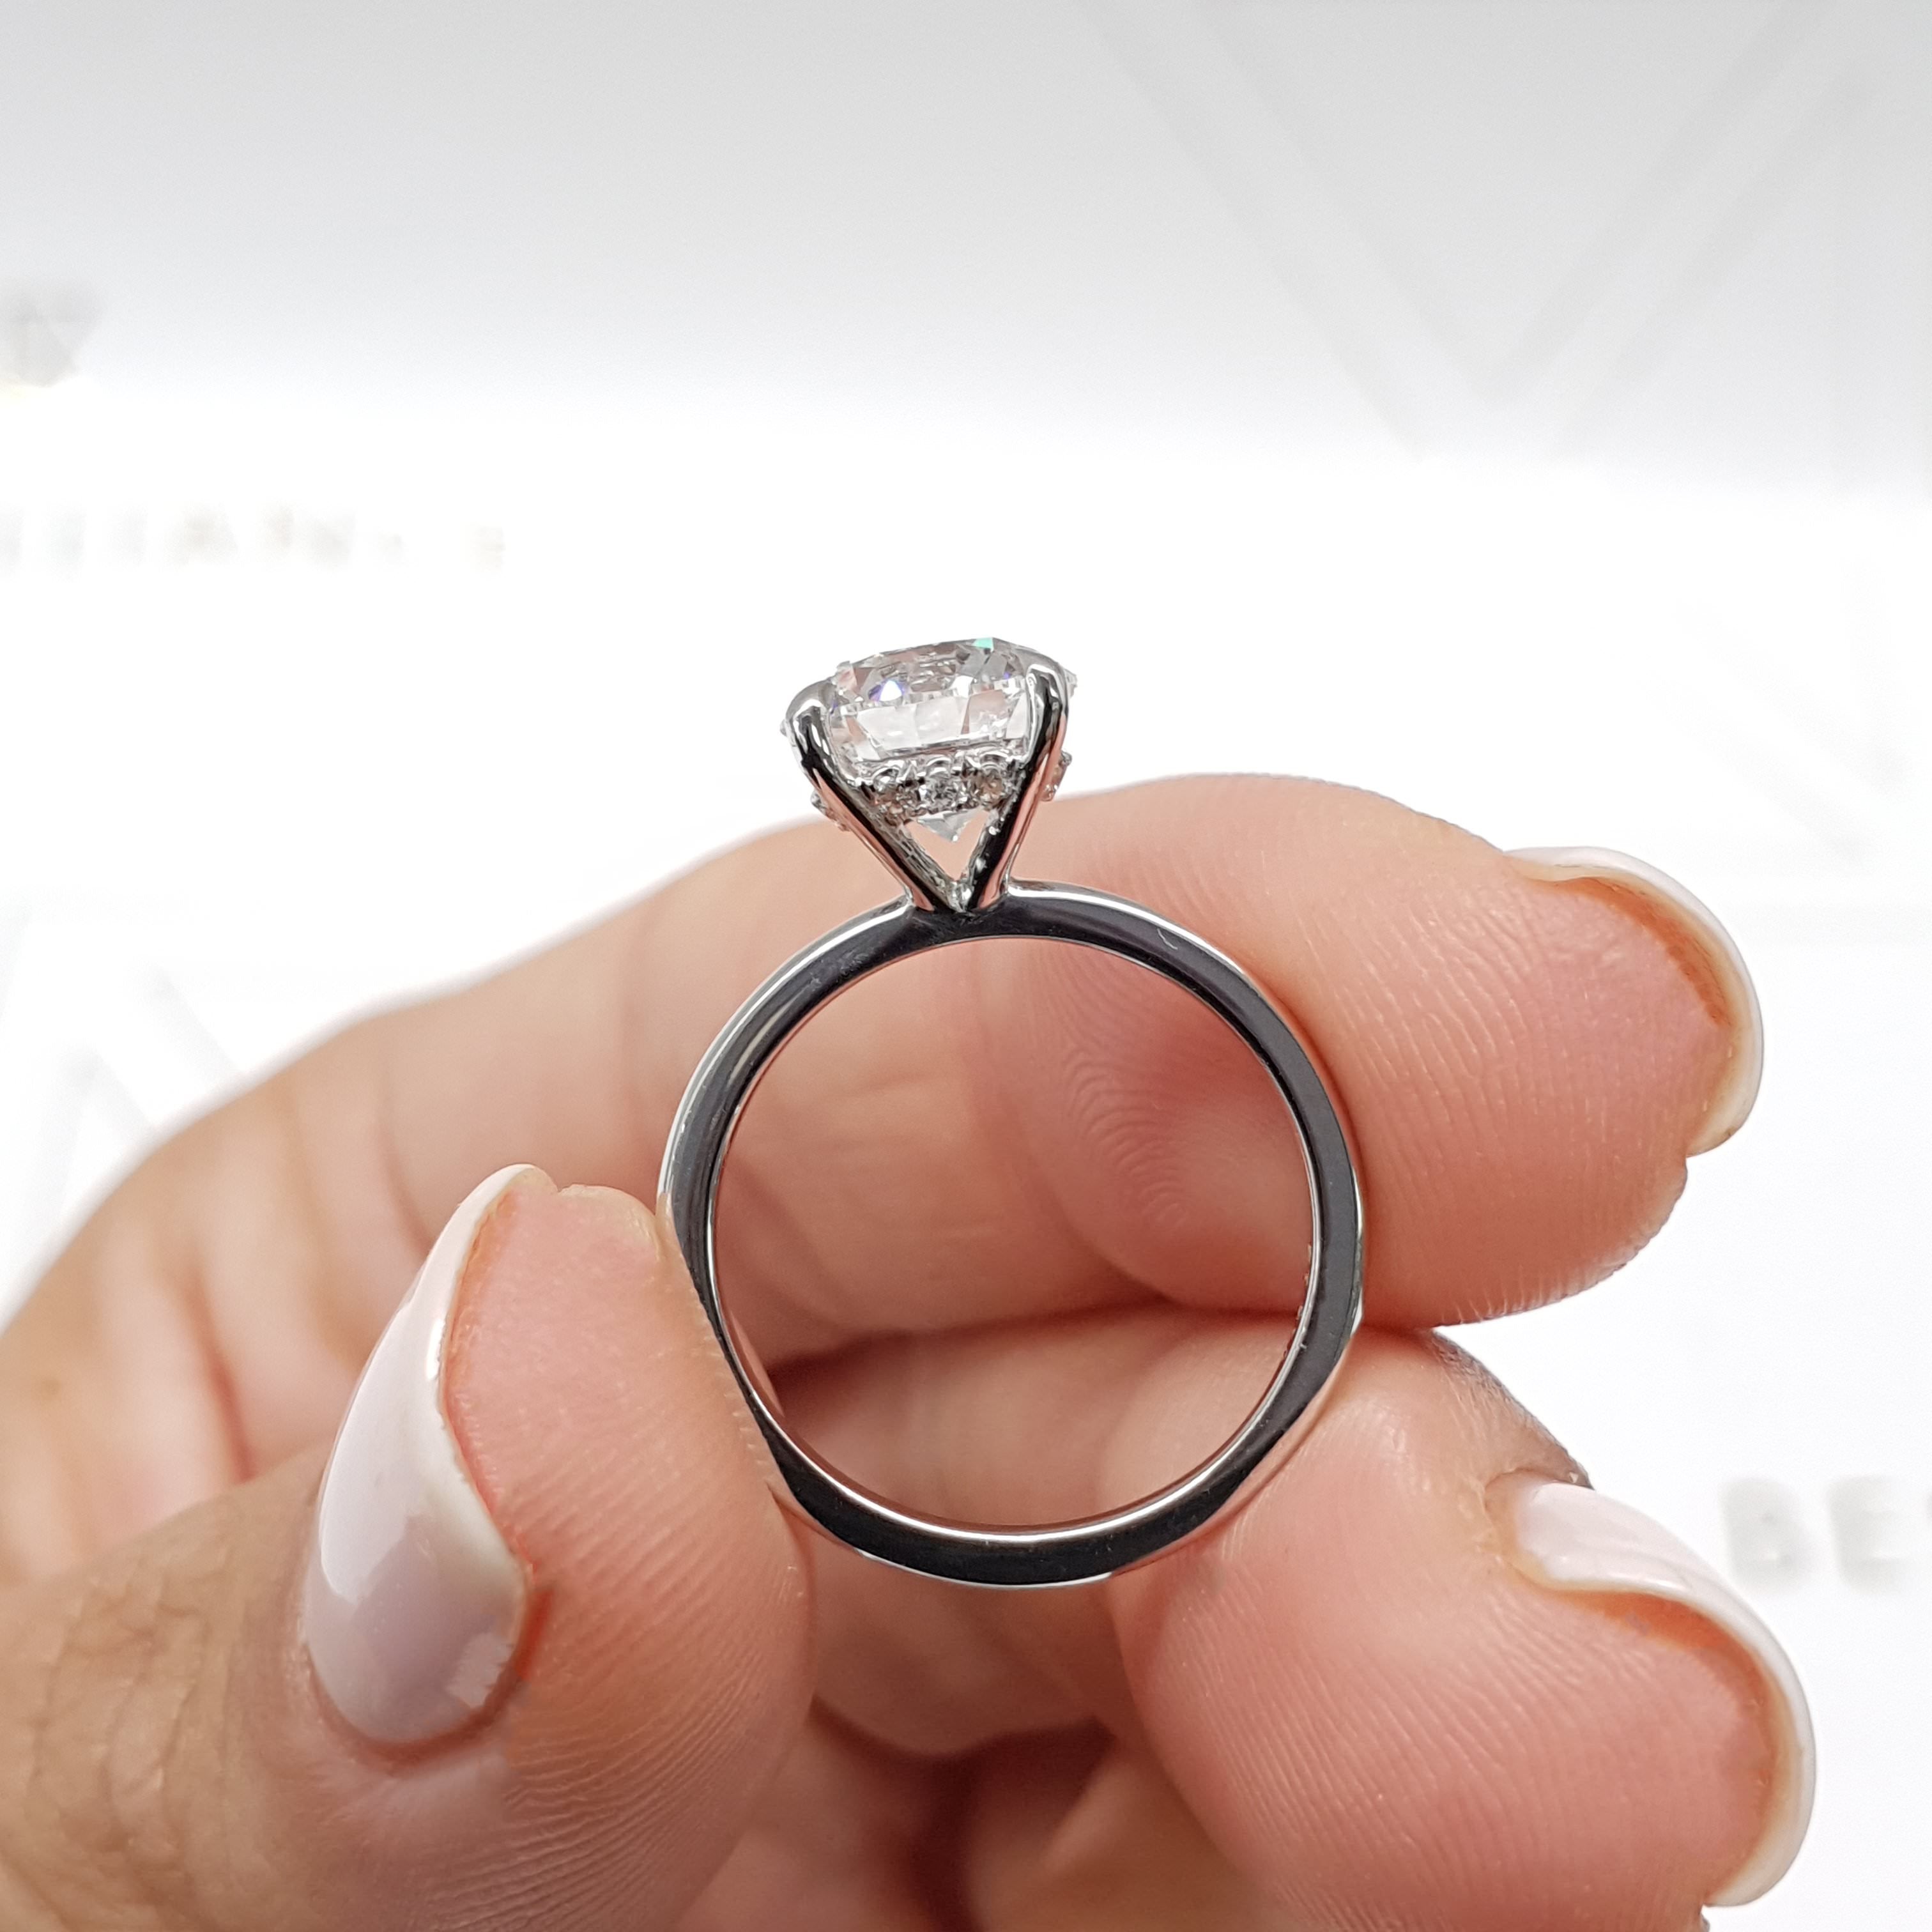 Cynthia Diamond Engagement Ring   (2.1 Carat) -14K White Gold